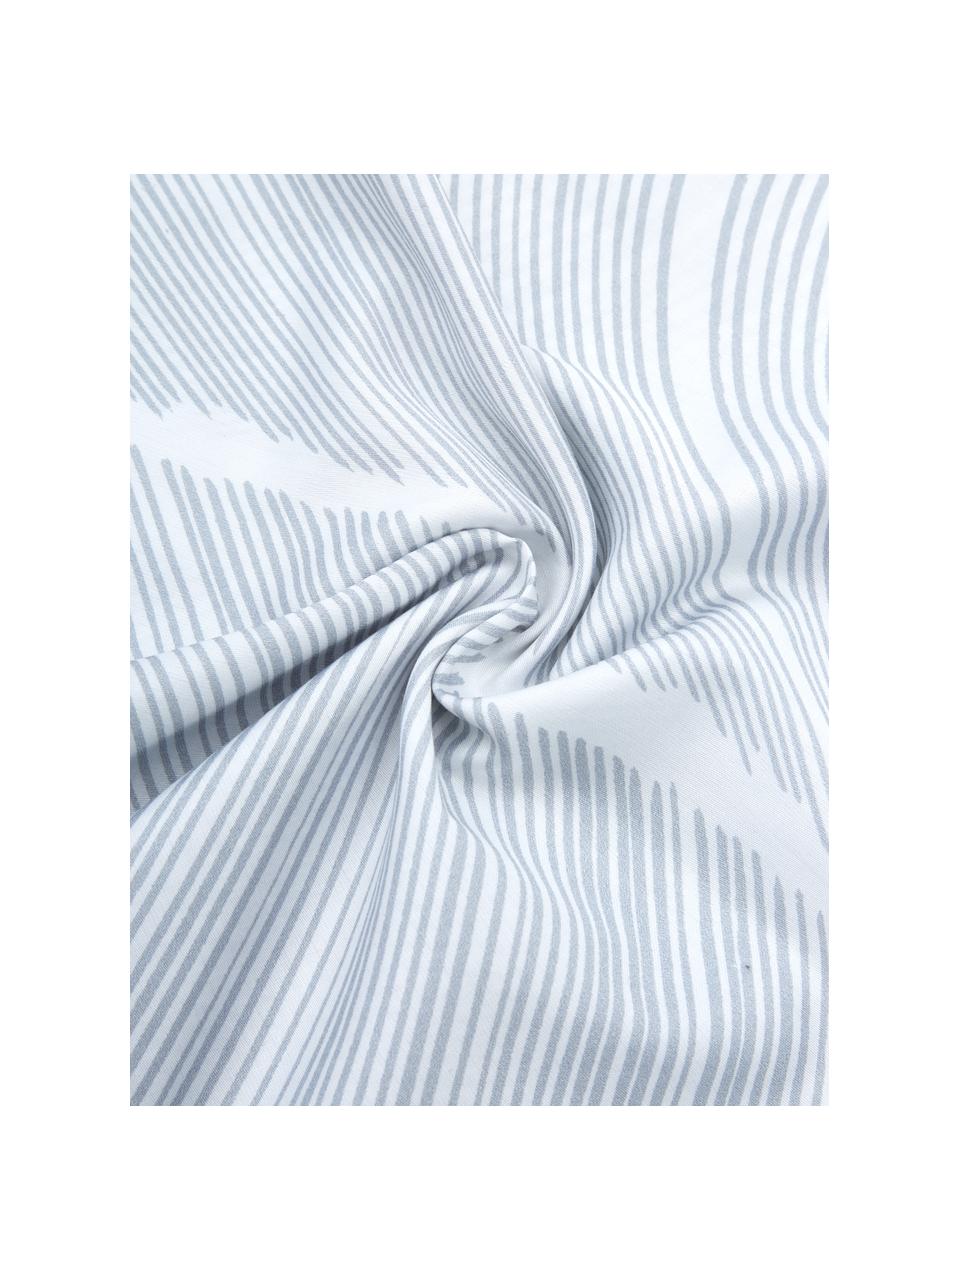 Gemusterte Baumwollsatin-Bettwäsche Ocean, Webart: Satin Baumwollsatin wird , Weiß, Blau, 135 x 200 cm + 1 Kissen 80 x 80 cm